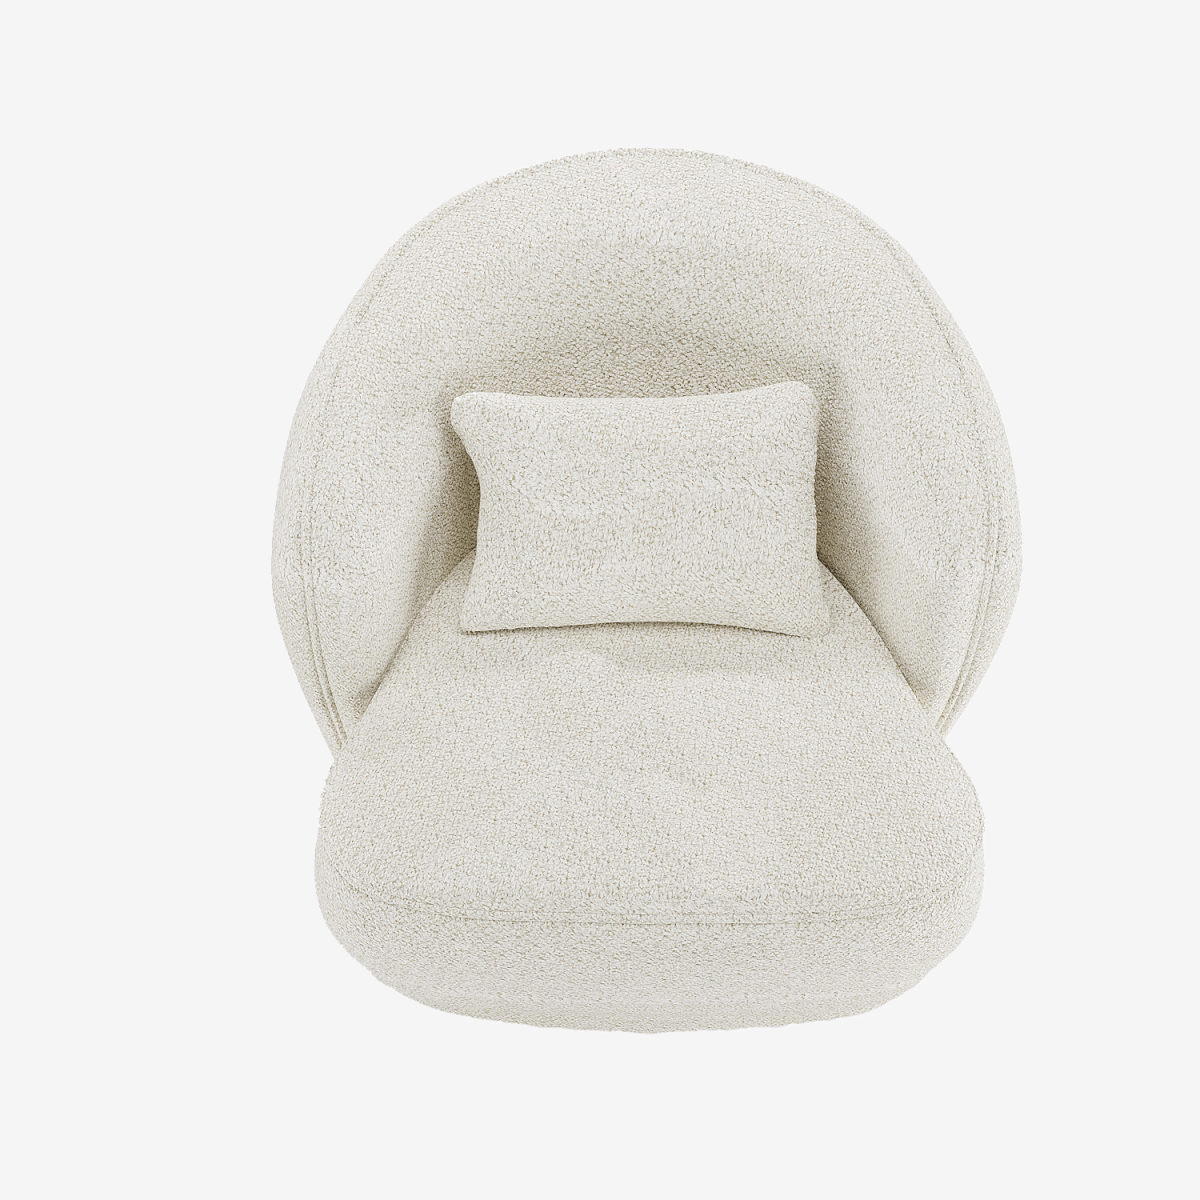 Petit fauteuil pas cher, design organique en tissu bouclé blanc - Potiron Paris, déco et meuble contemporain design pas cher